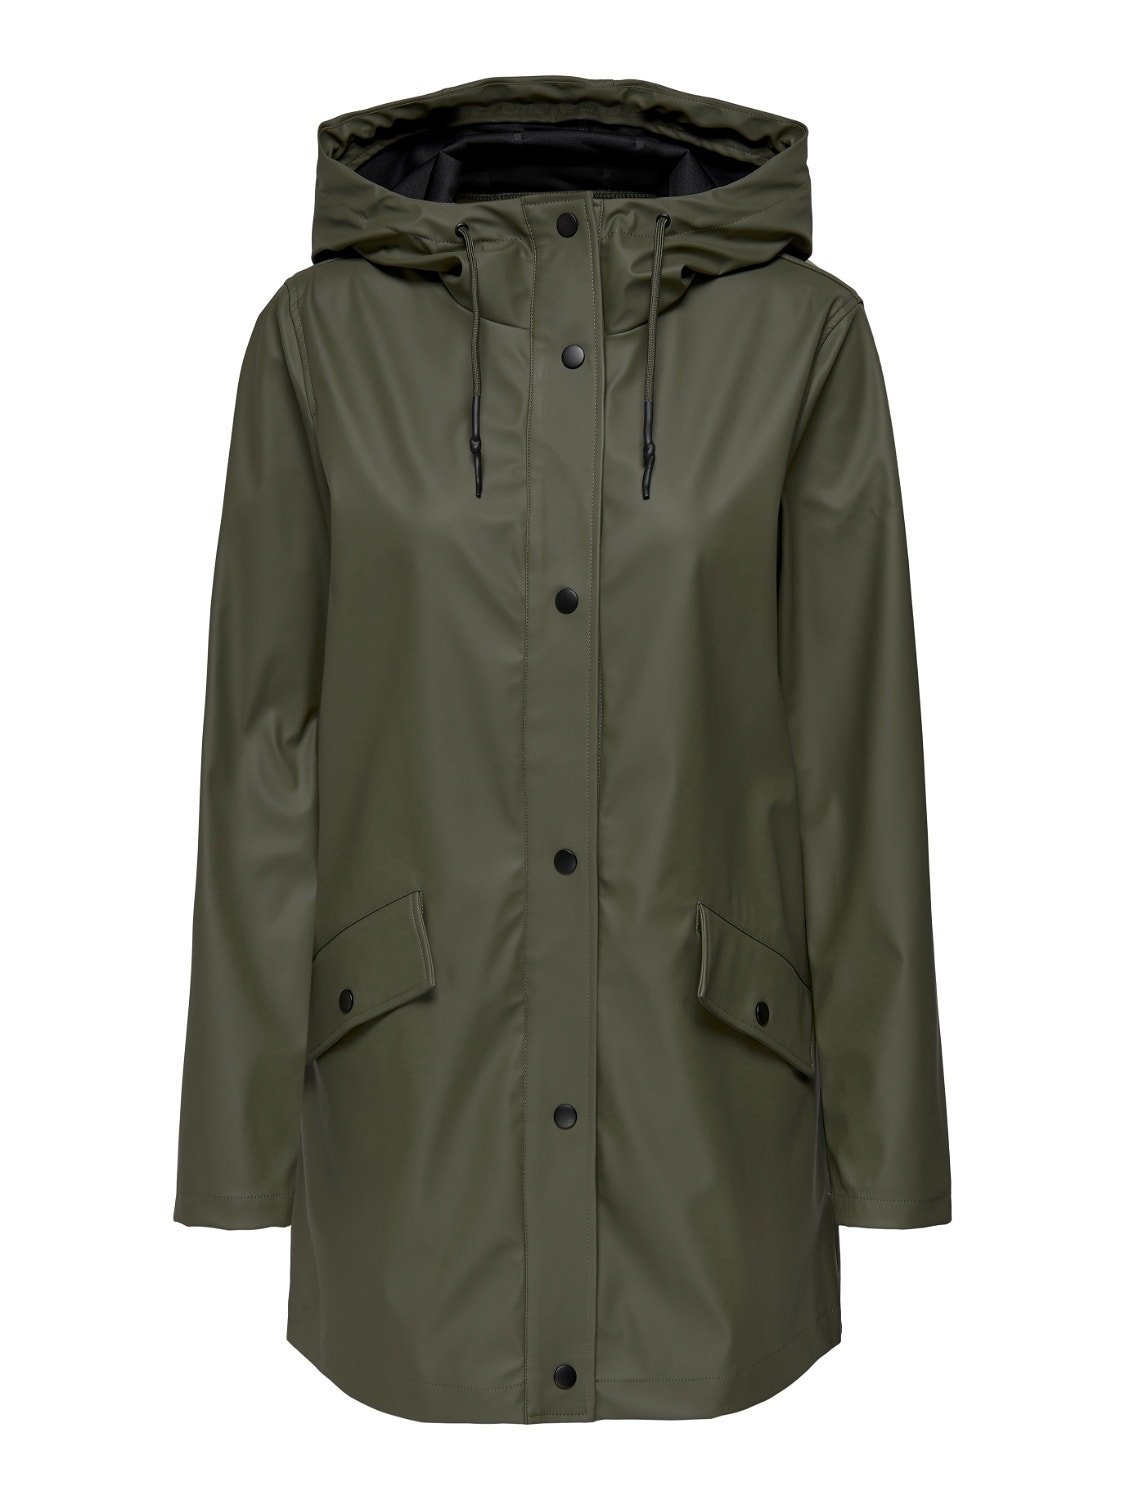 ONLY Solid Colored Rain jacket -Kalamata - 15261734